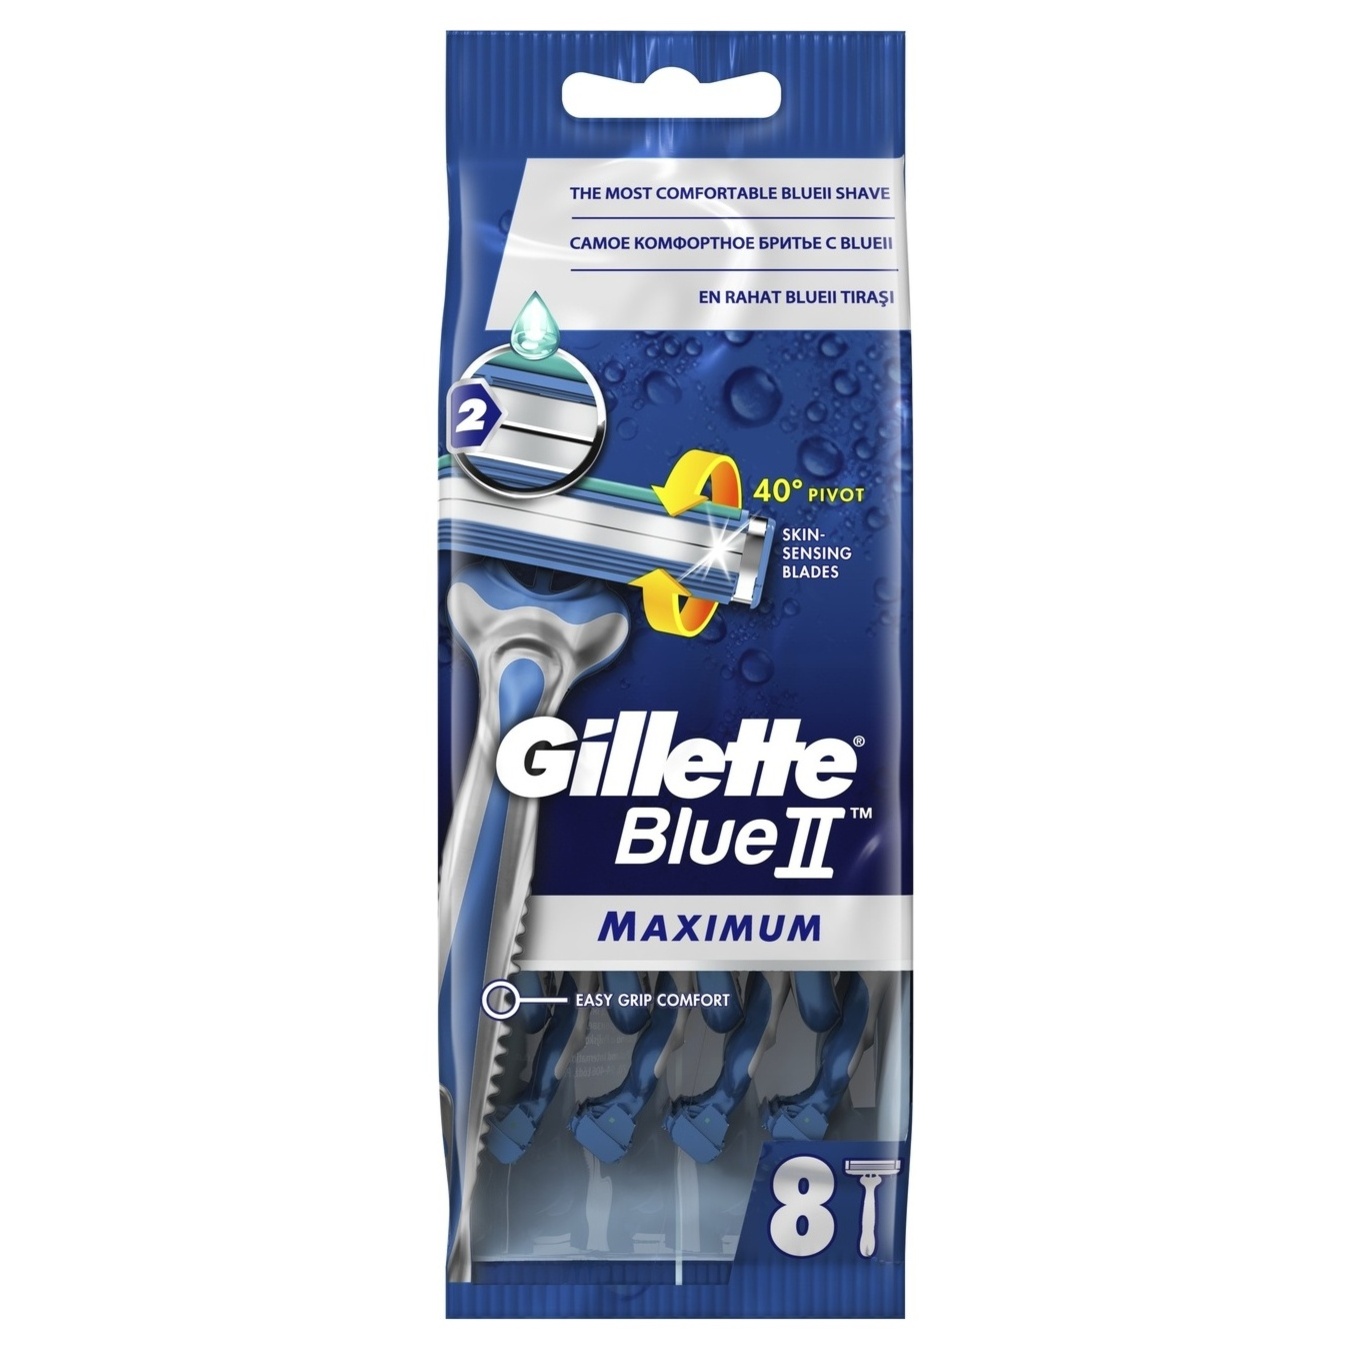 Бритви Gillette одноразовi Blueii Max 6шт+2шт безкоштовно